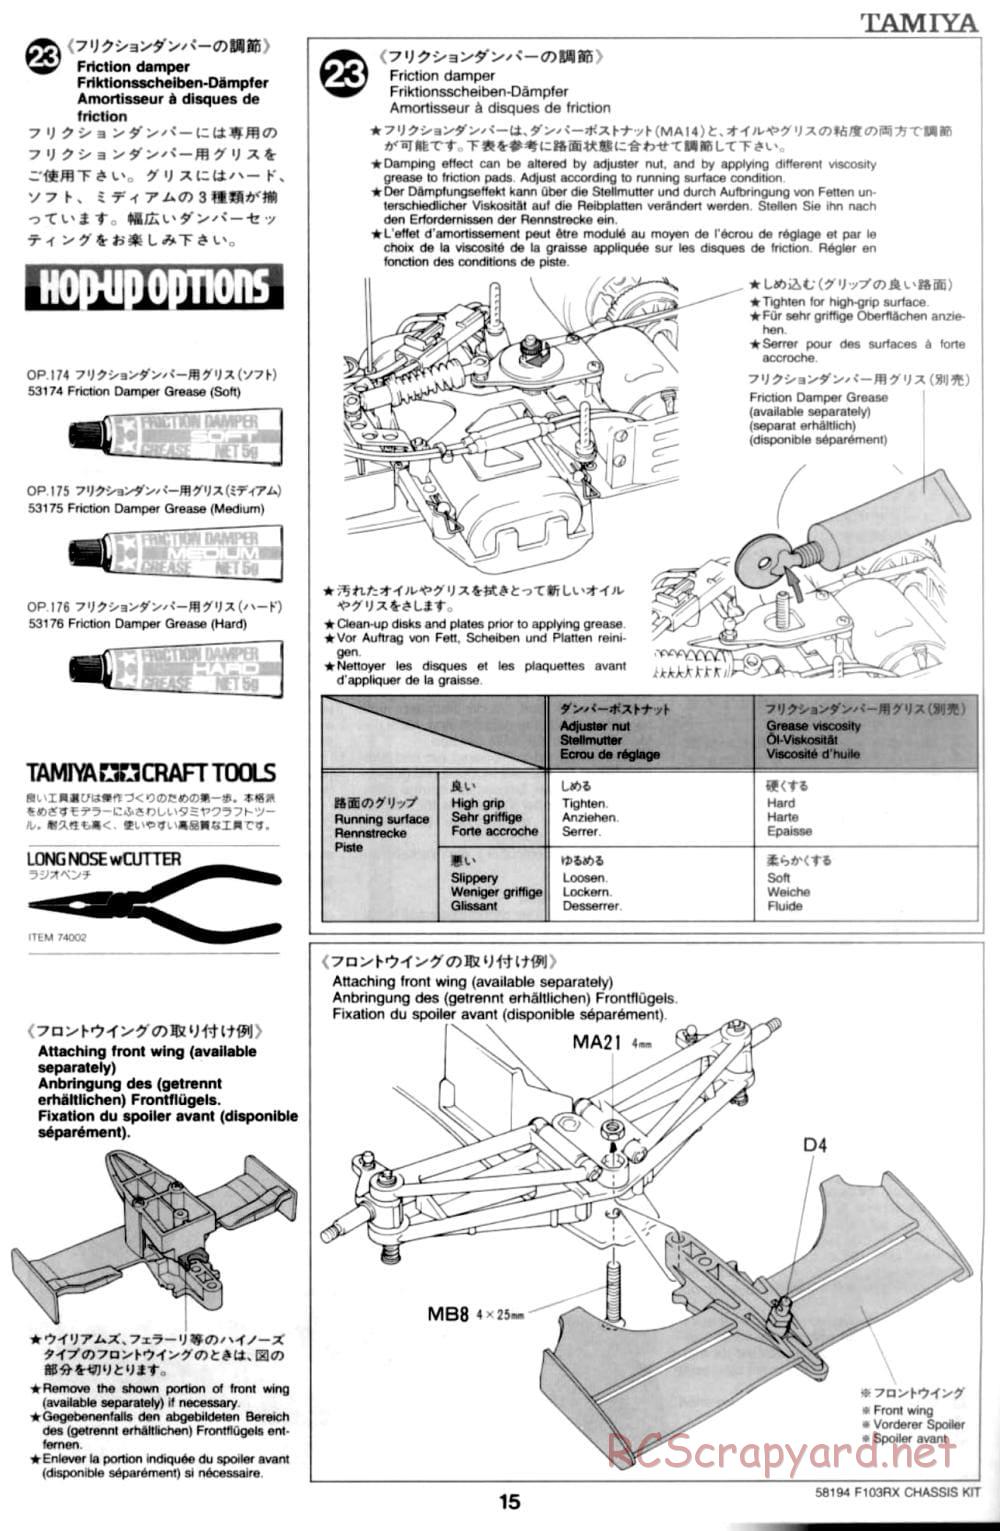 Tamiya - F103RX Chassis - Manual - Page 15